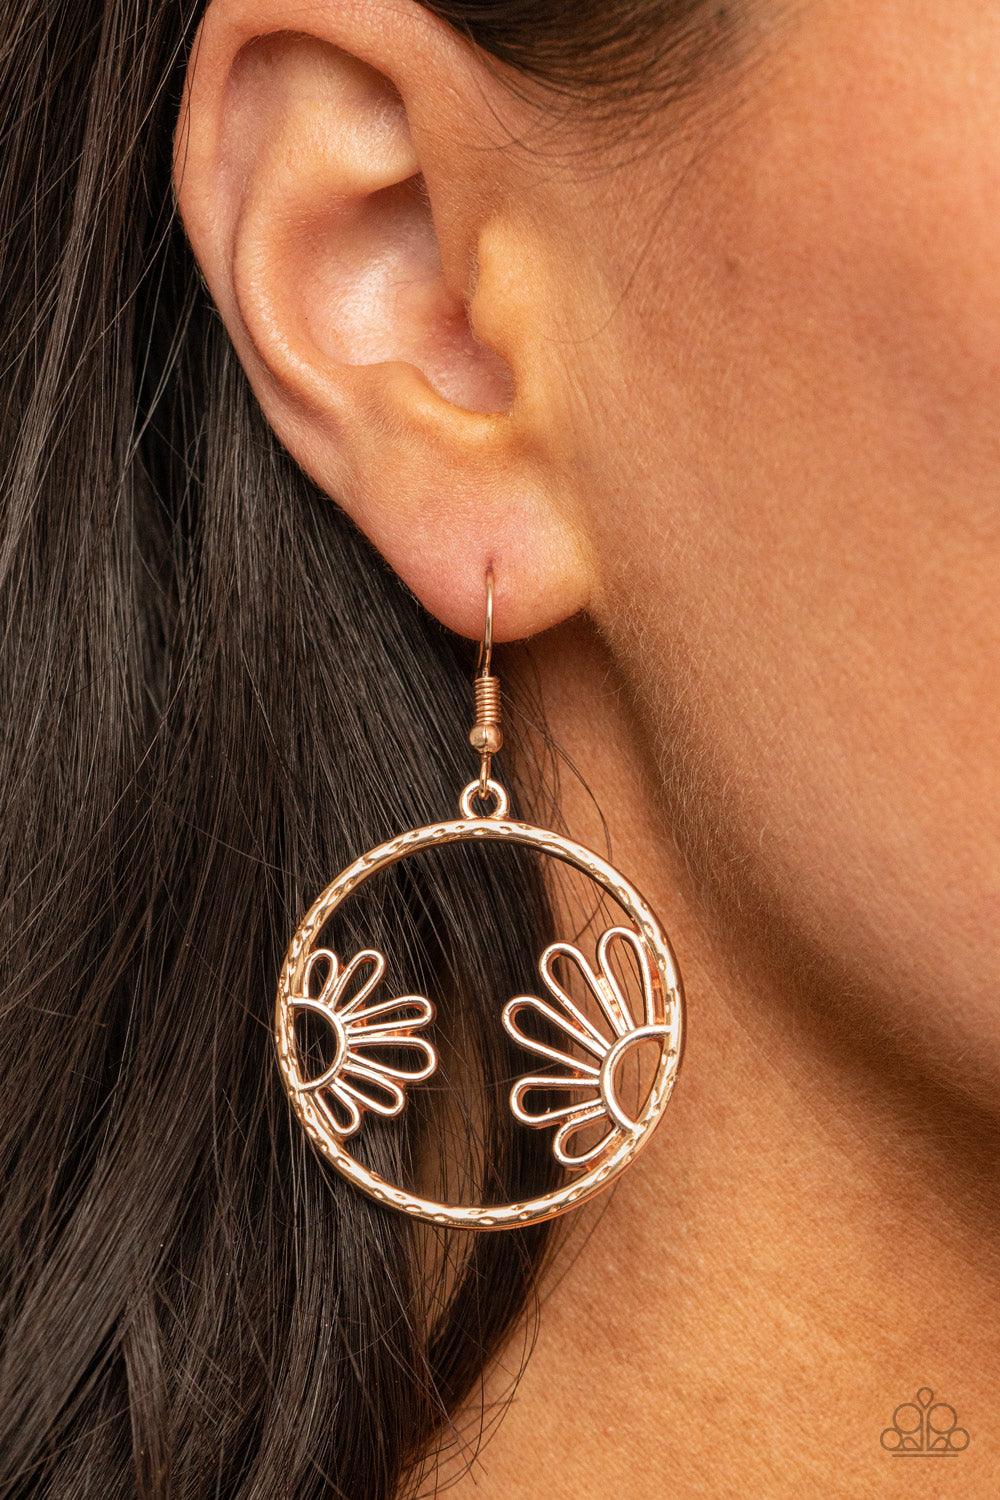 Demurely Daisy Rose Gold Earrings - Jewelry by Bretta